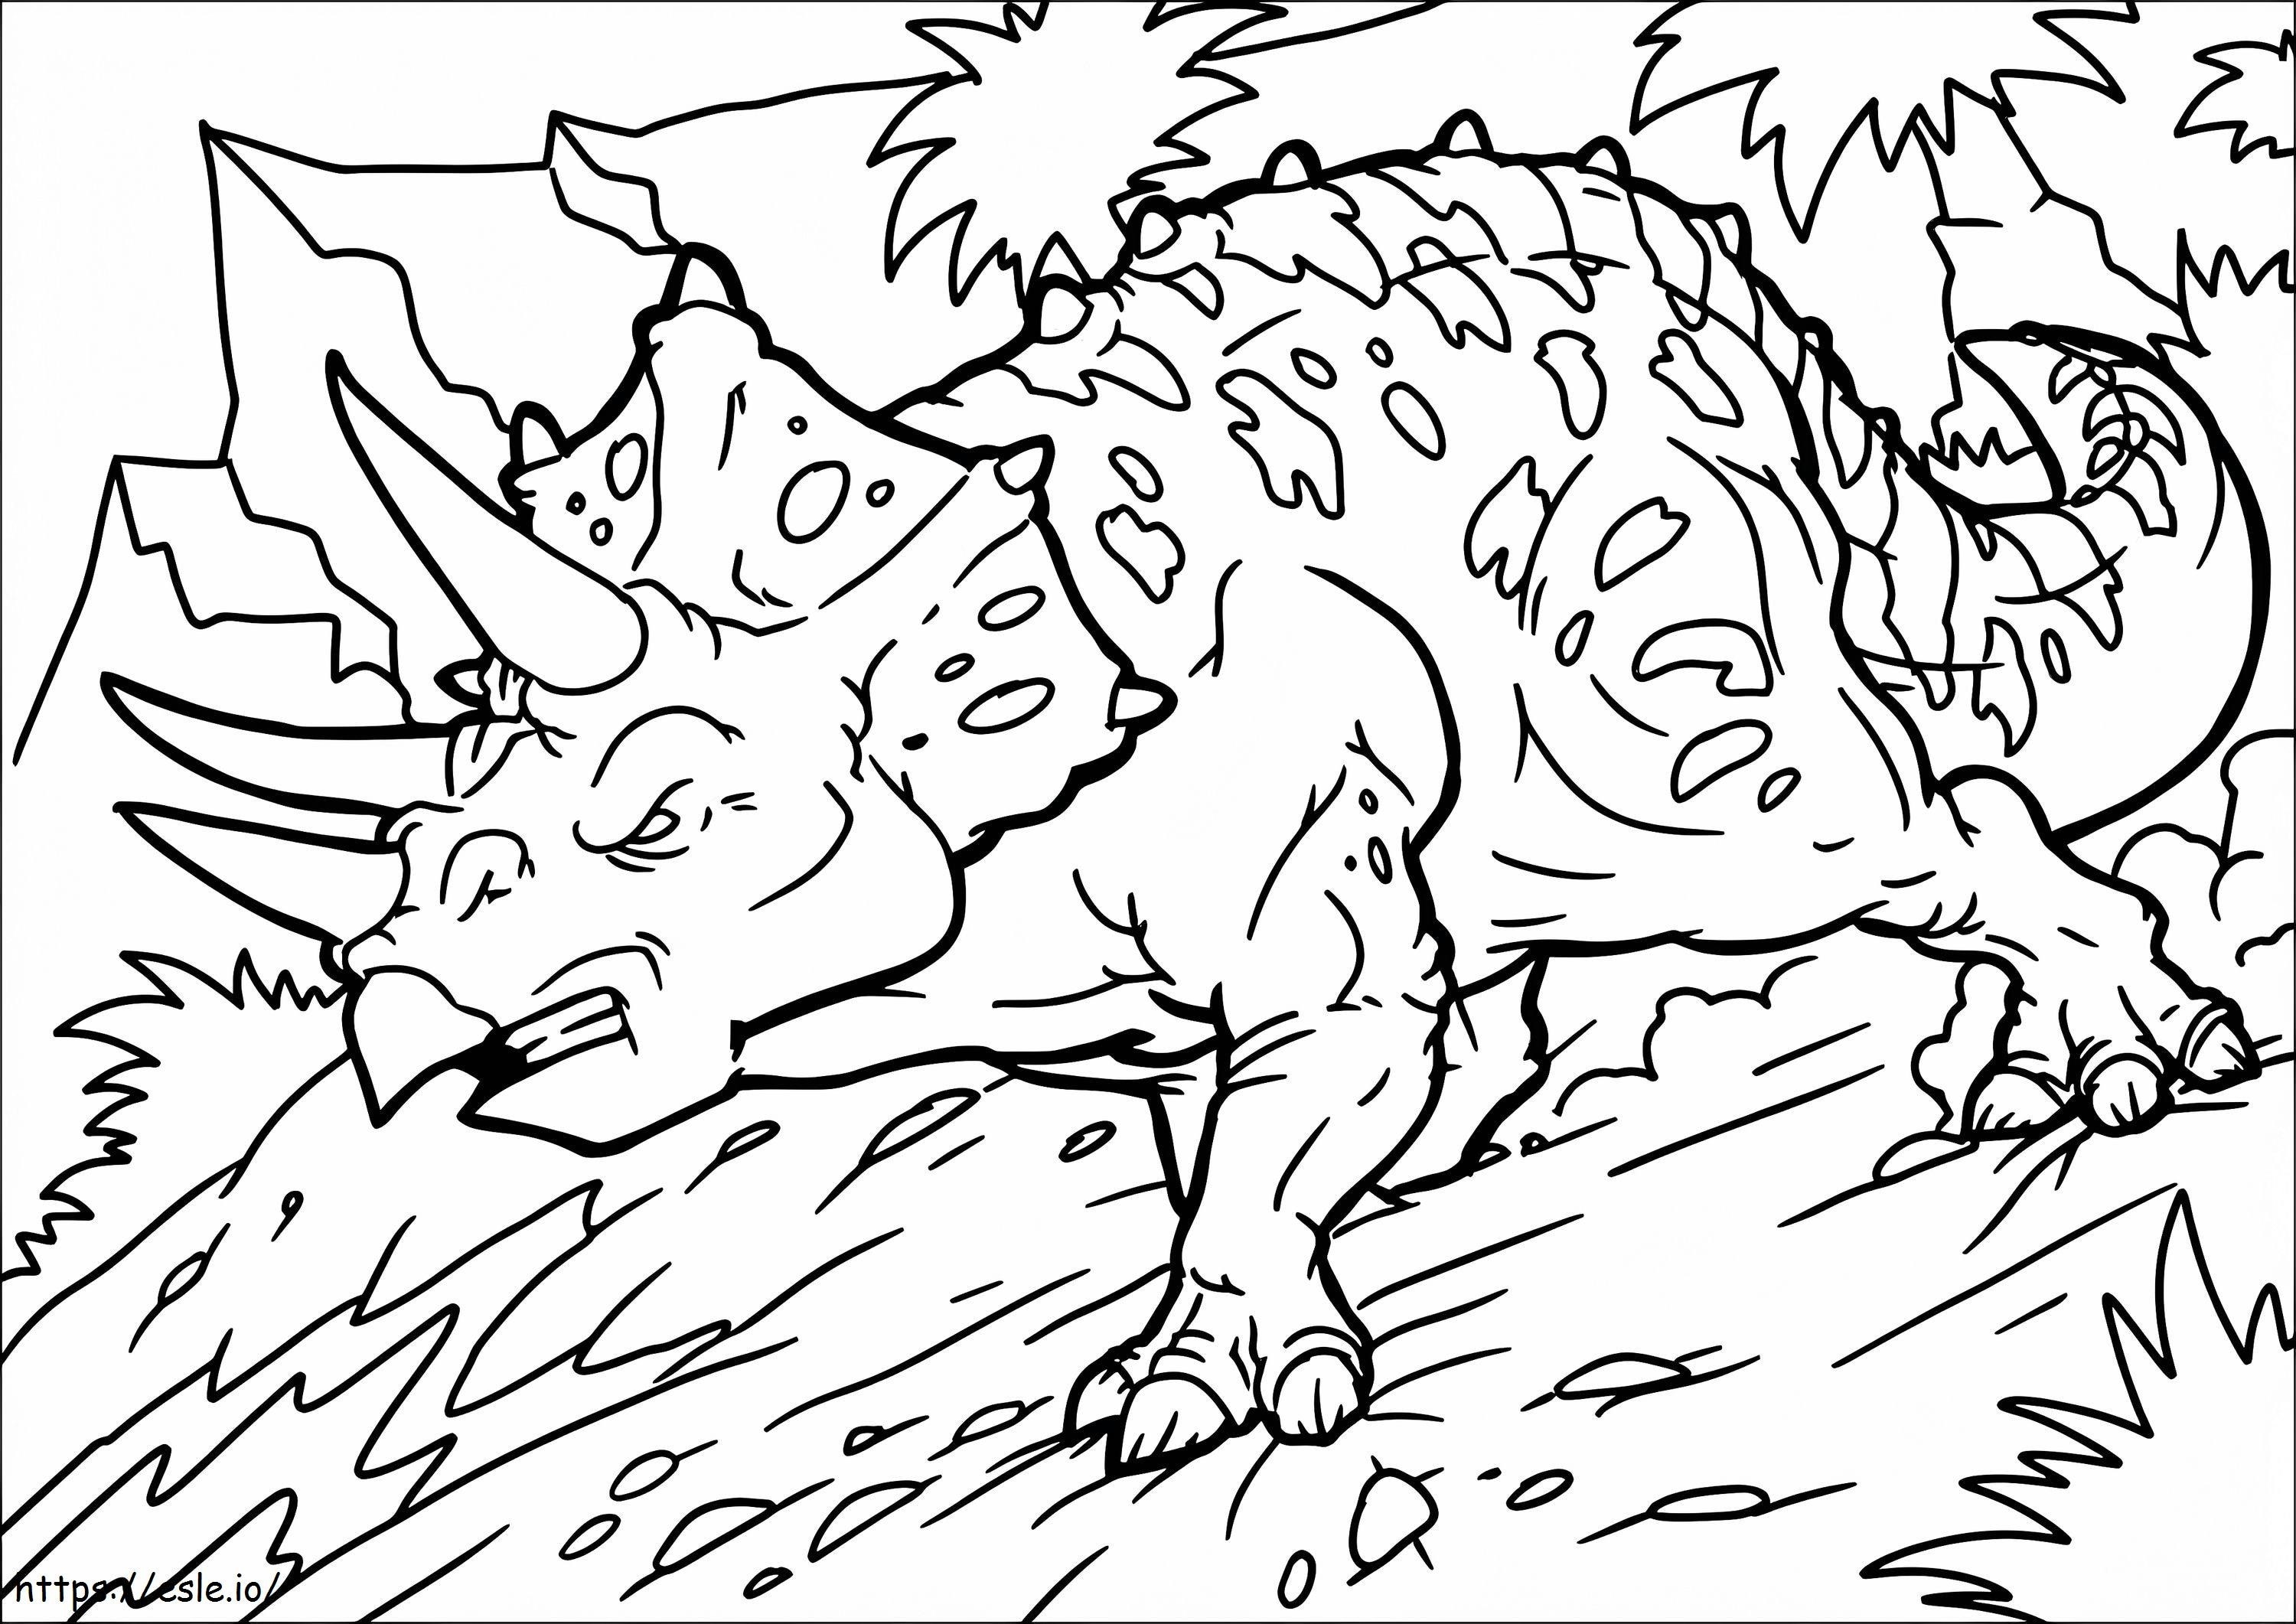 Wütende Triceratops-Malseite ausmalbilder